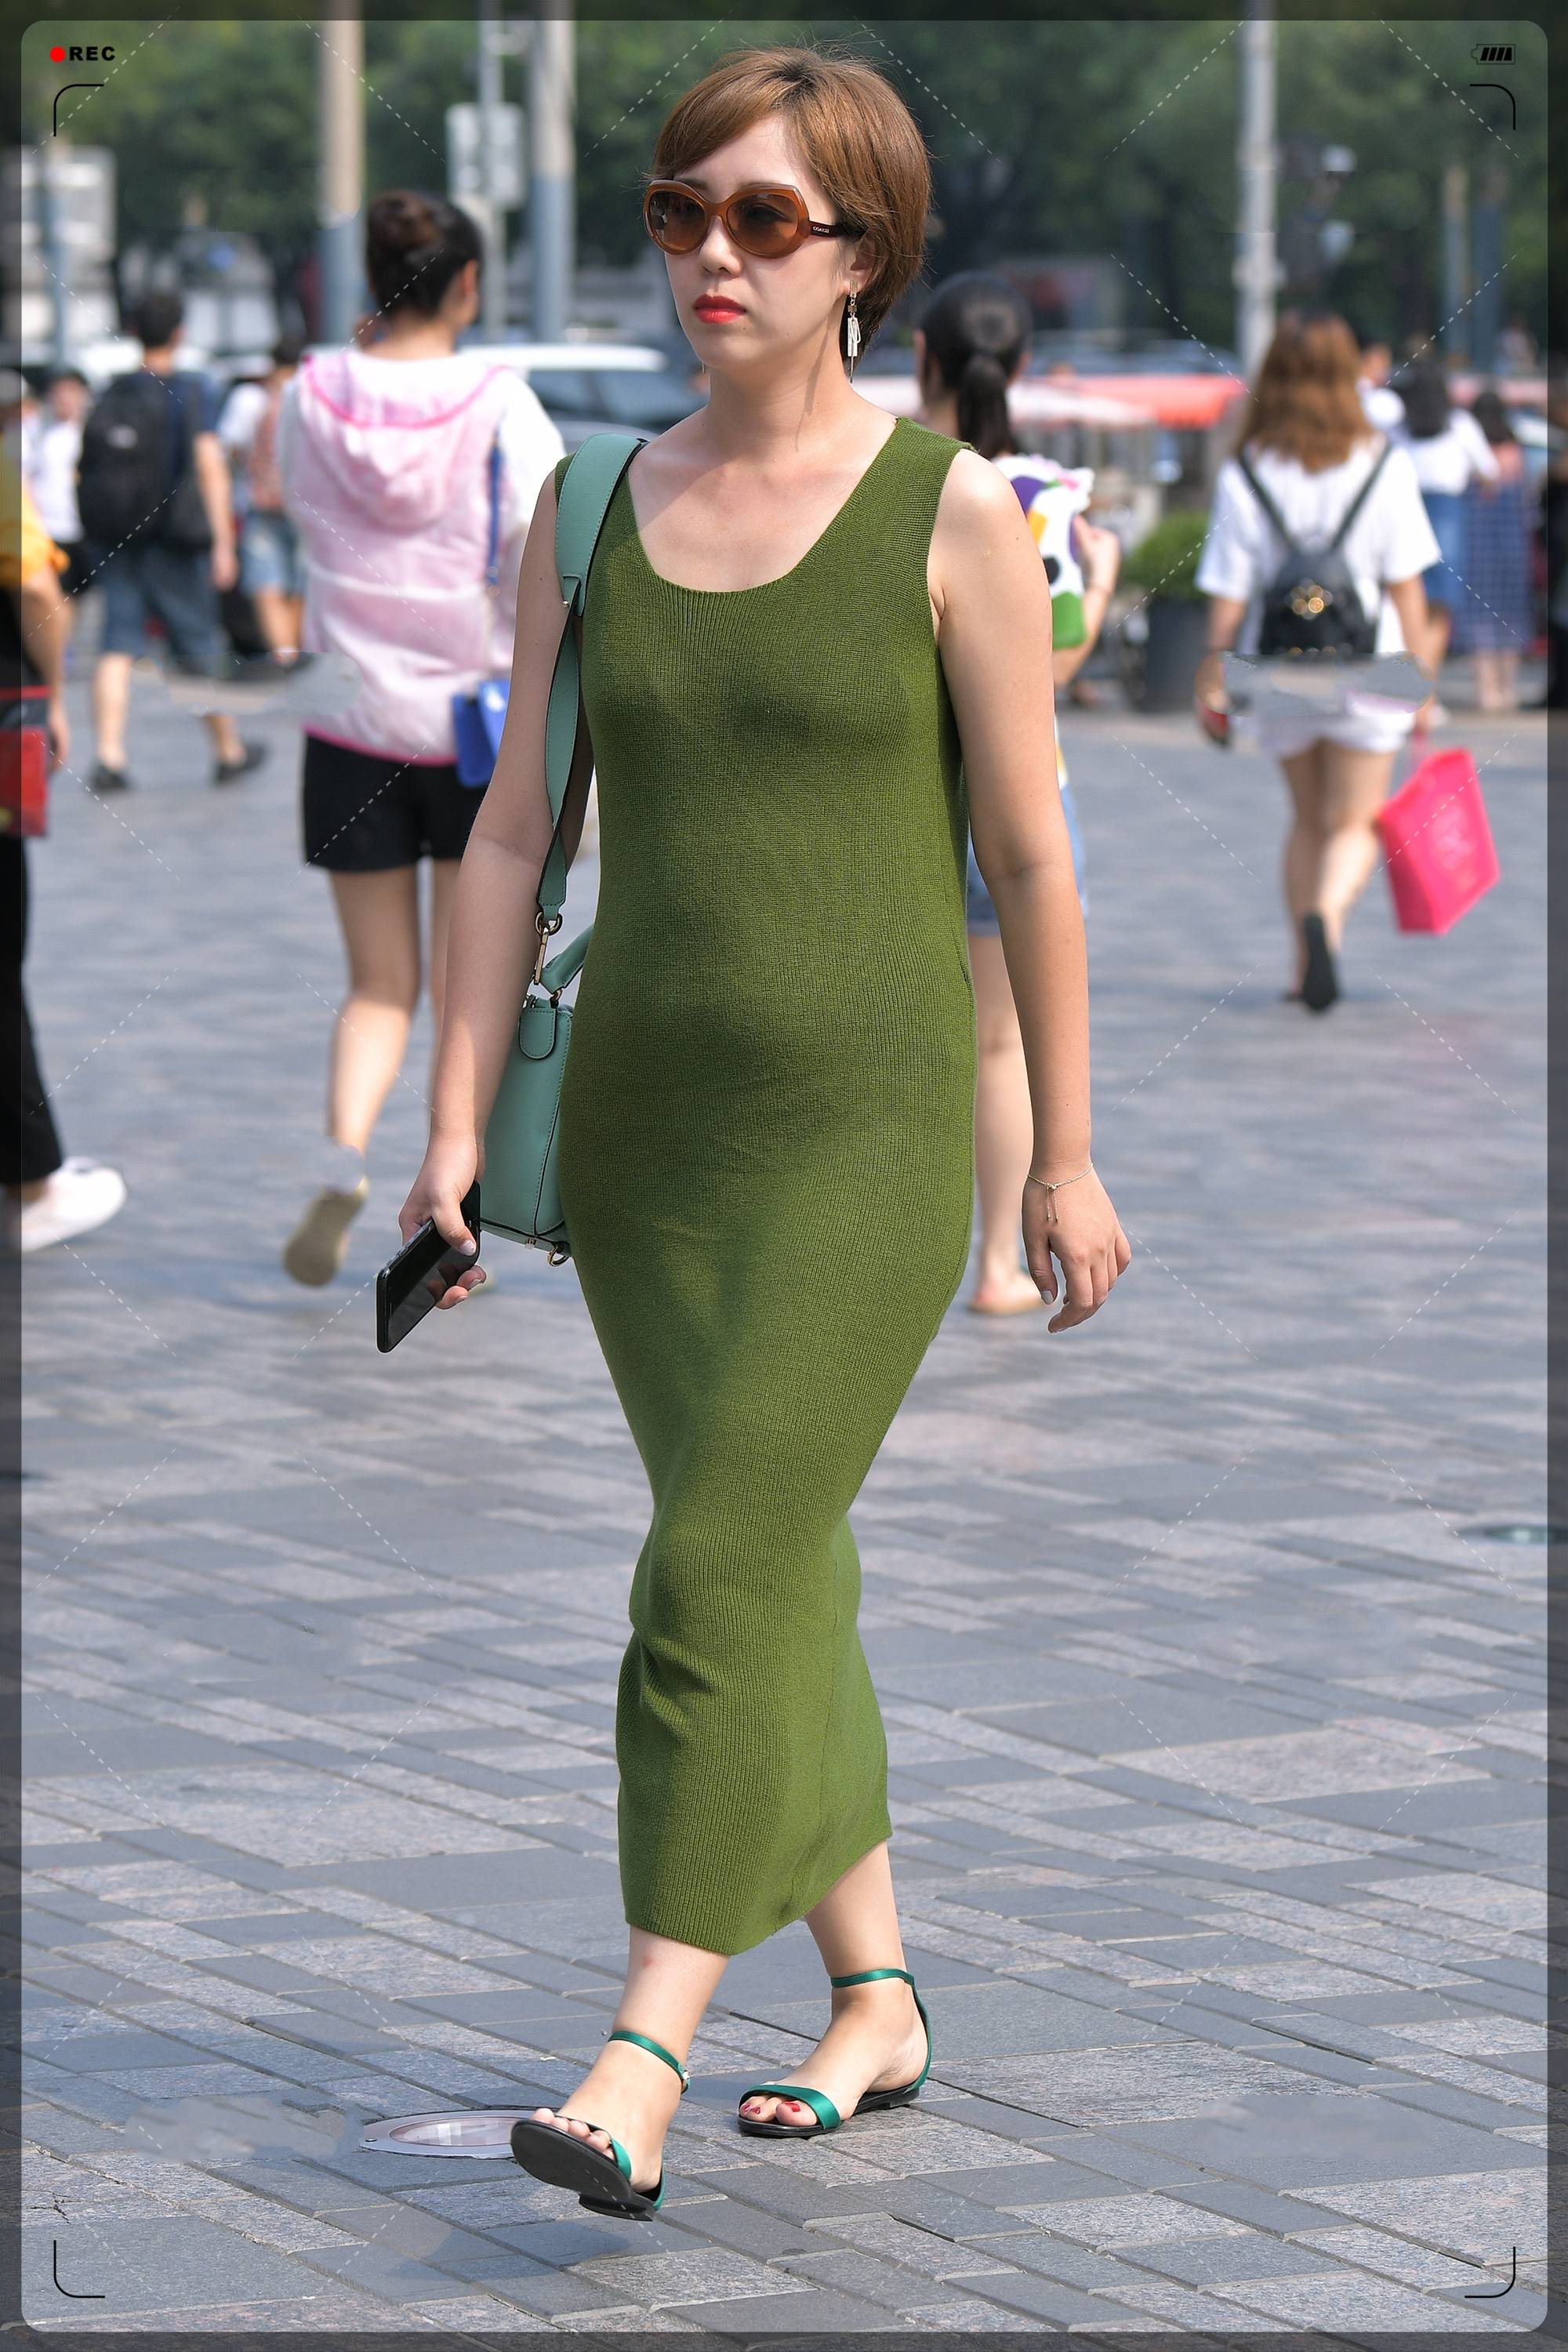 而且墨绿色一看就是夏天的颜色,试想一下,穿一件墨绿色长裙行走在